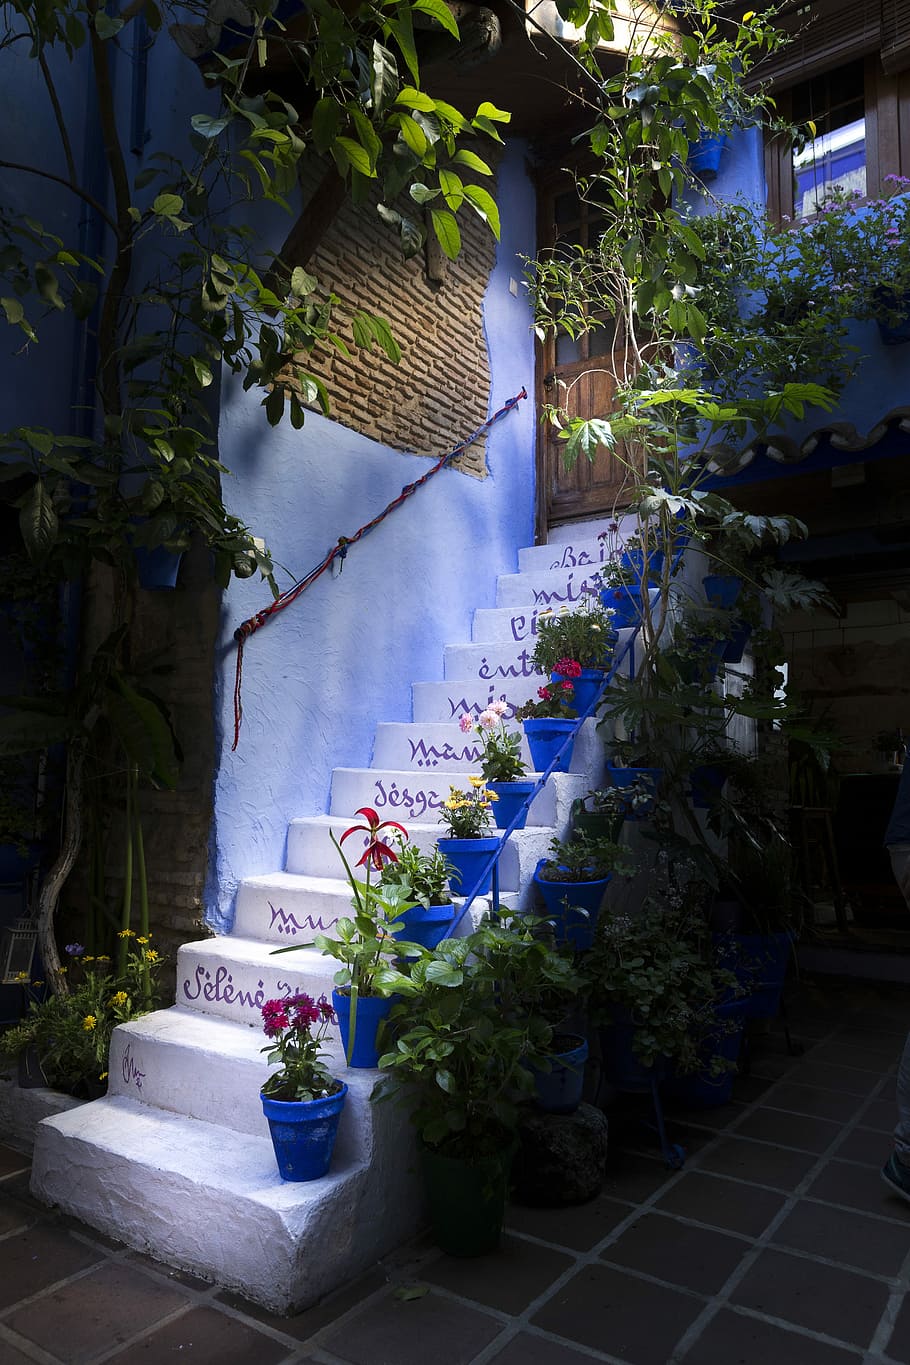 Ladder, Plants, Patios, De Córdoba, Córdoba, Spain, patios de córdoba, spain, flowers, flowerpot, cordoba